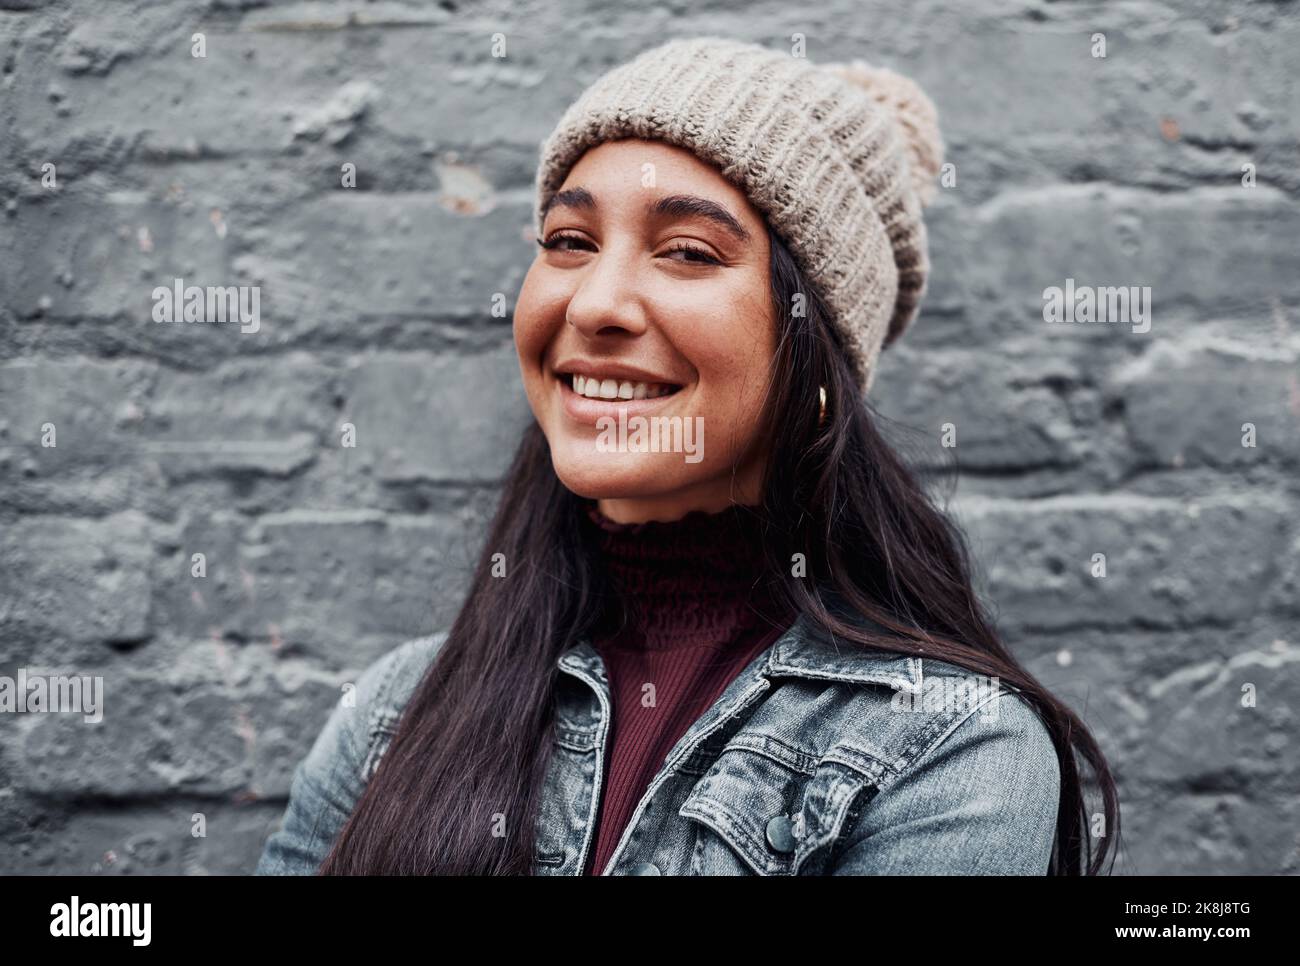 Glück ist es, was einen schön macht. Beschnittenes Porträt eines attraktiven Teenagers, das allein gegen eine graue Wand in der Stadt steht. Stockfoto